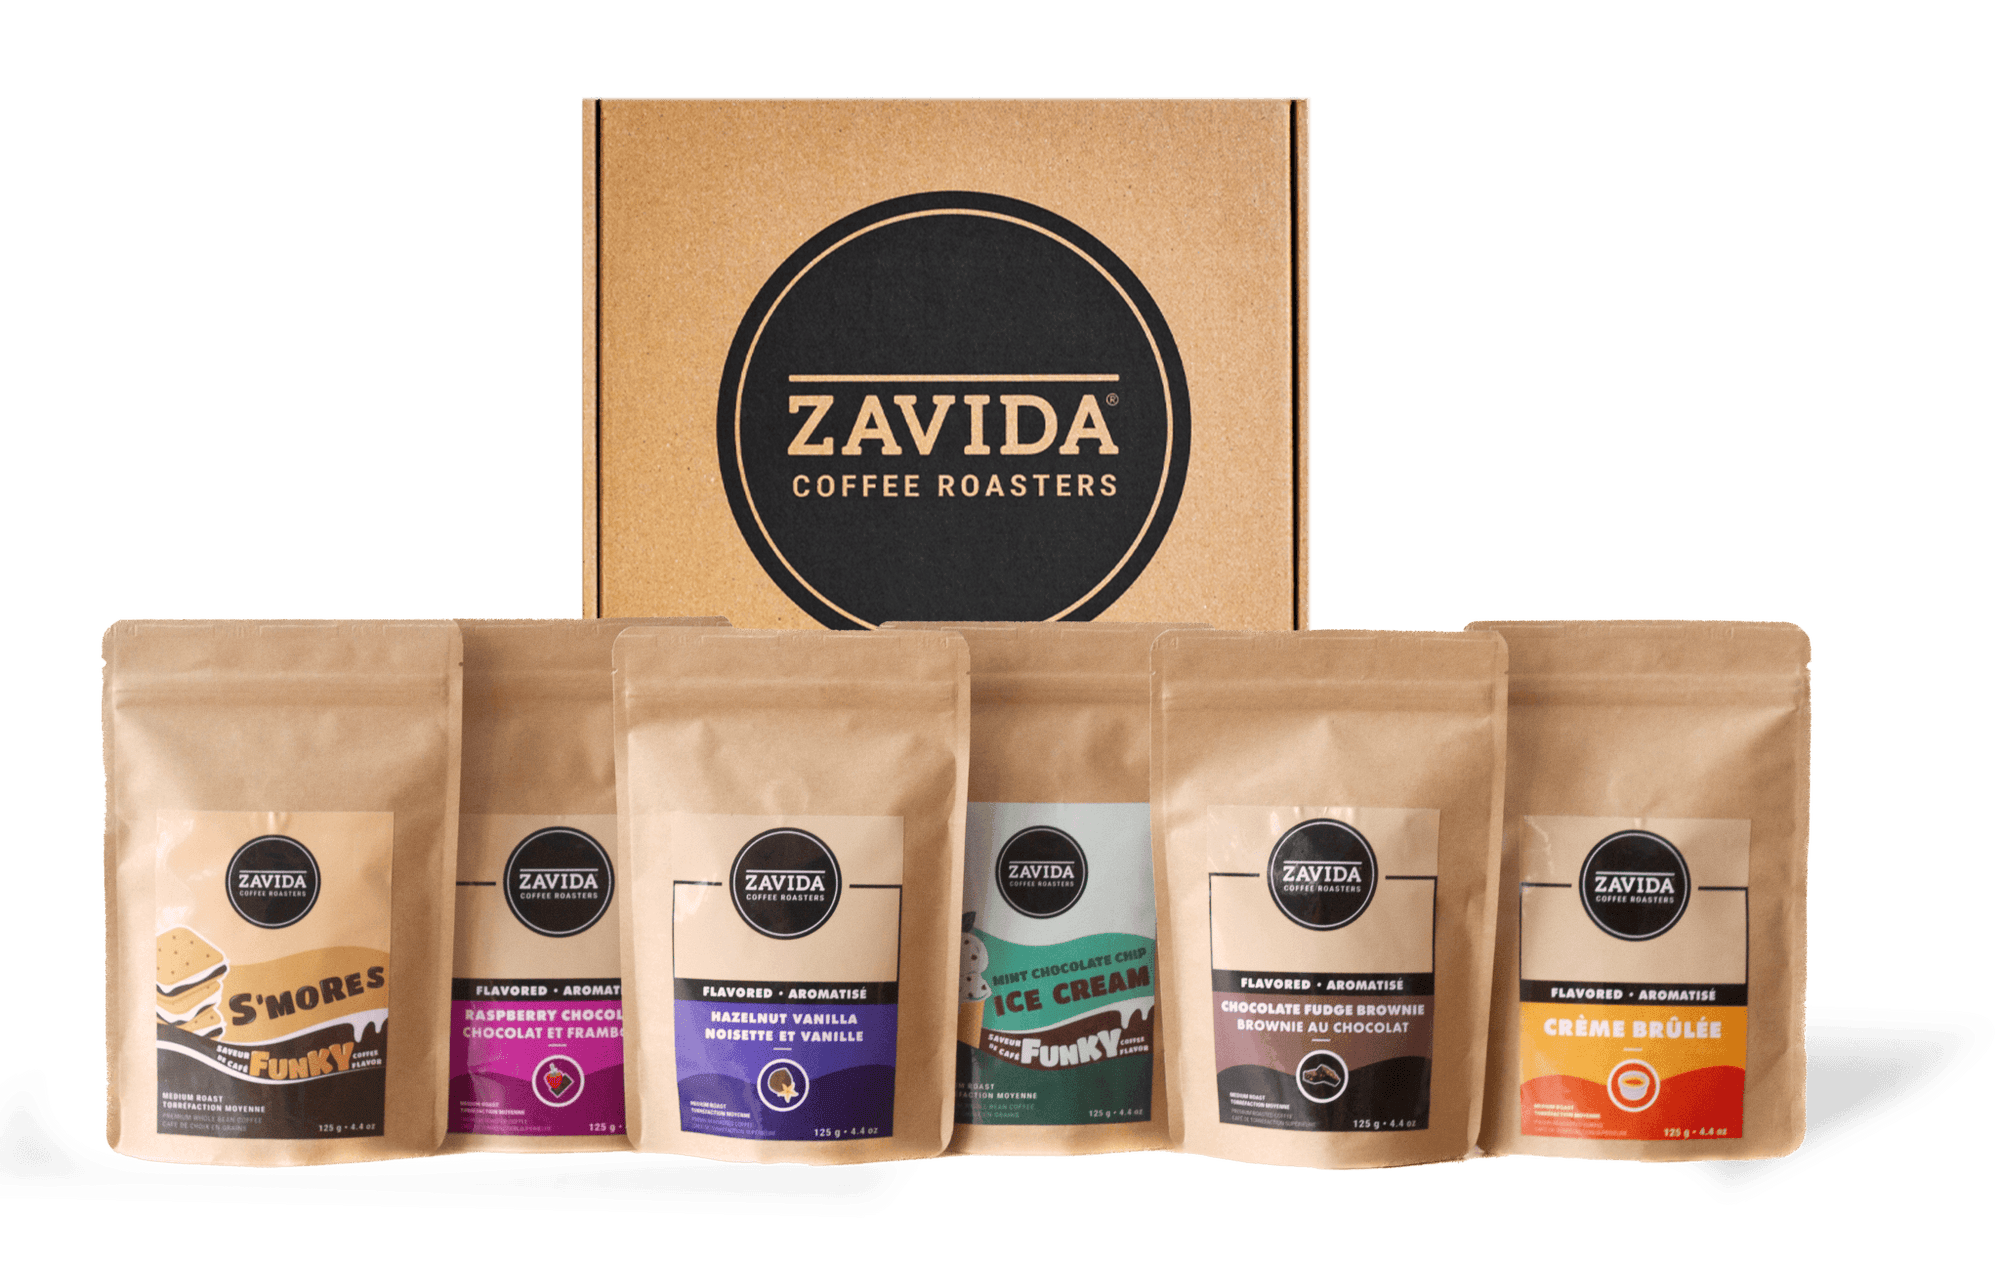 Taster's Box - Zavida Coffee